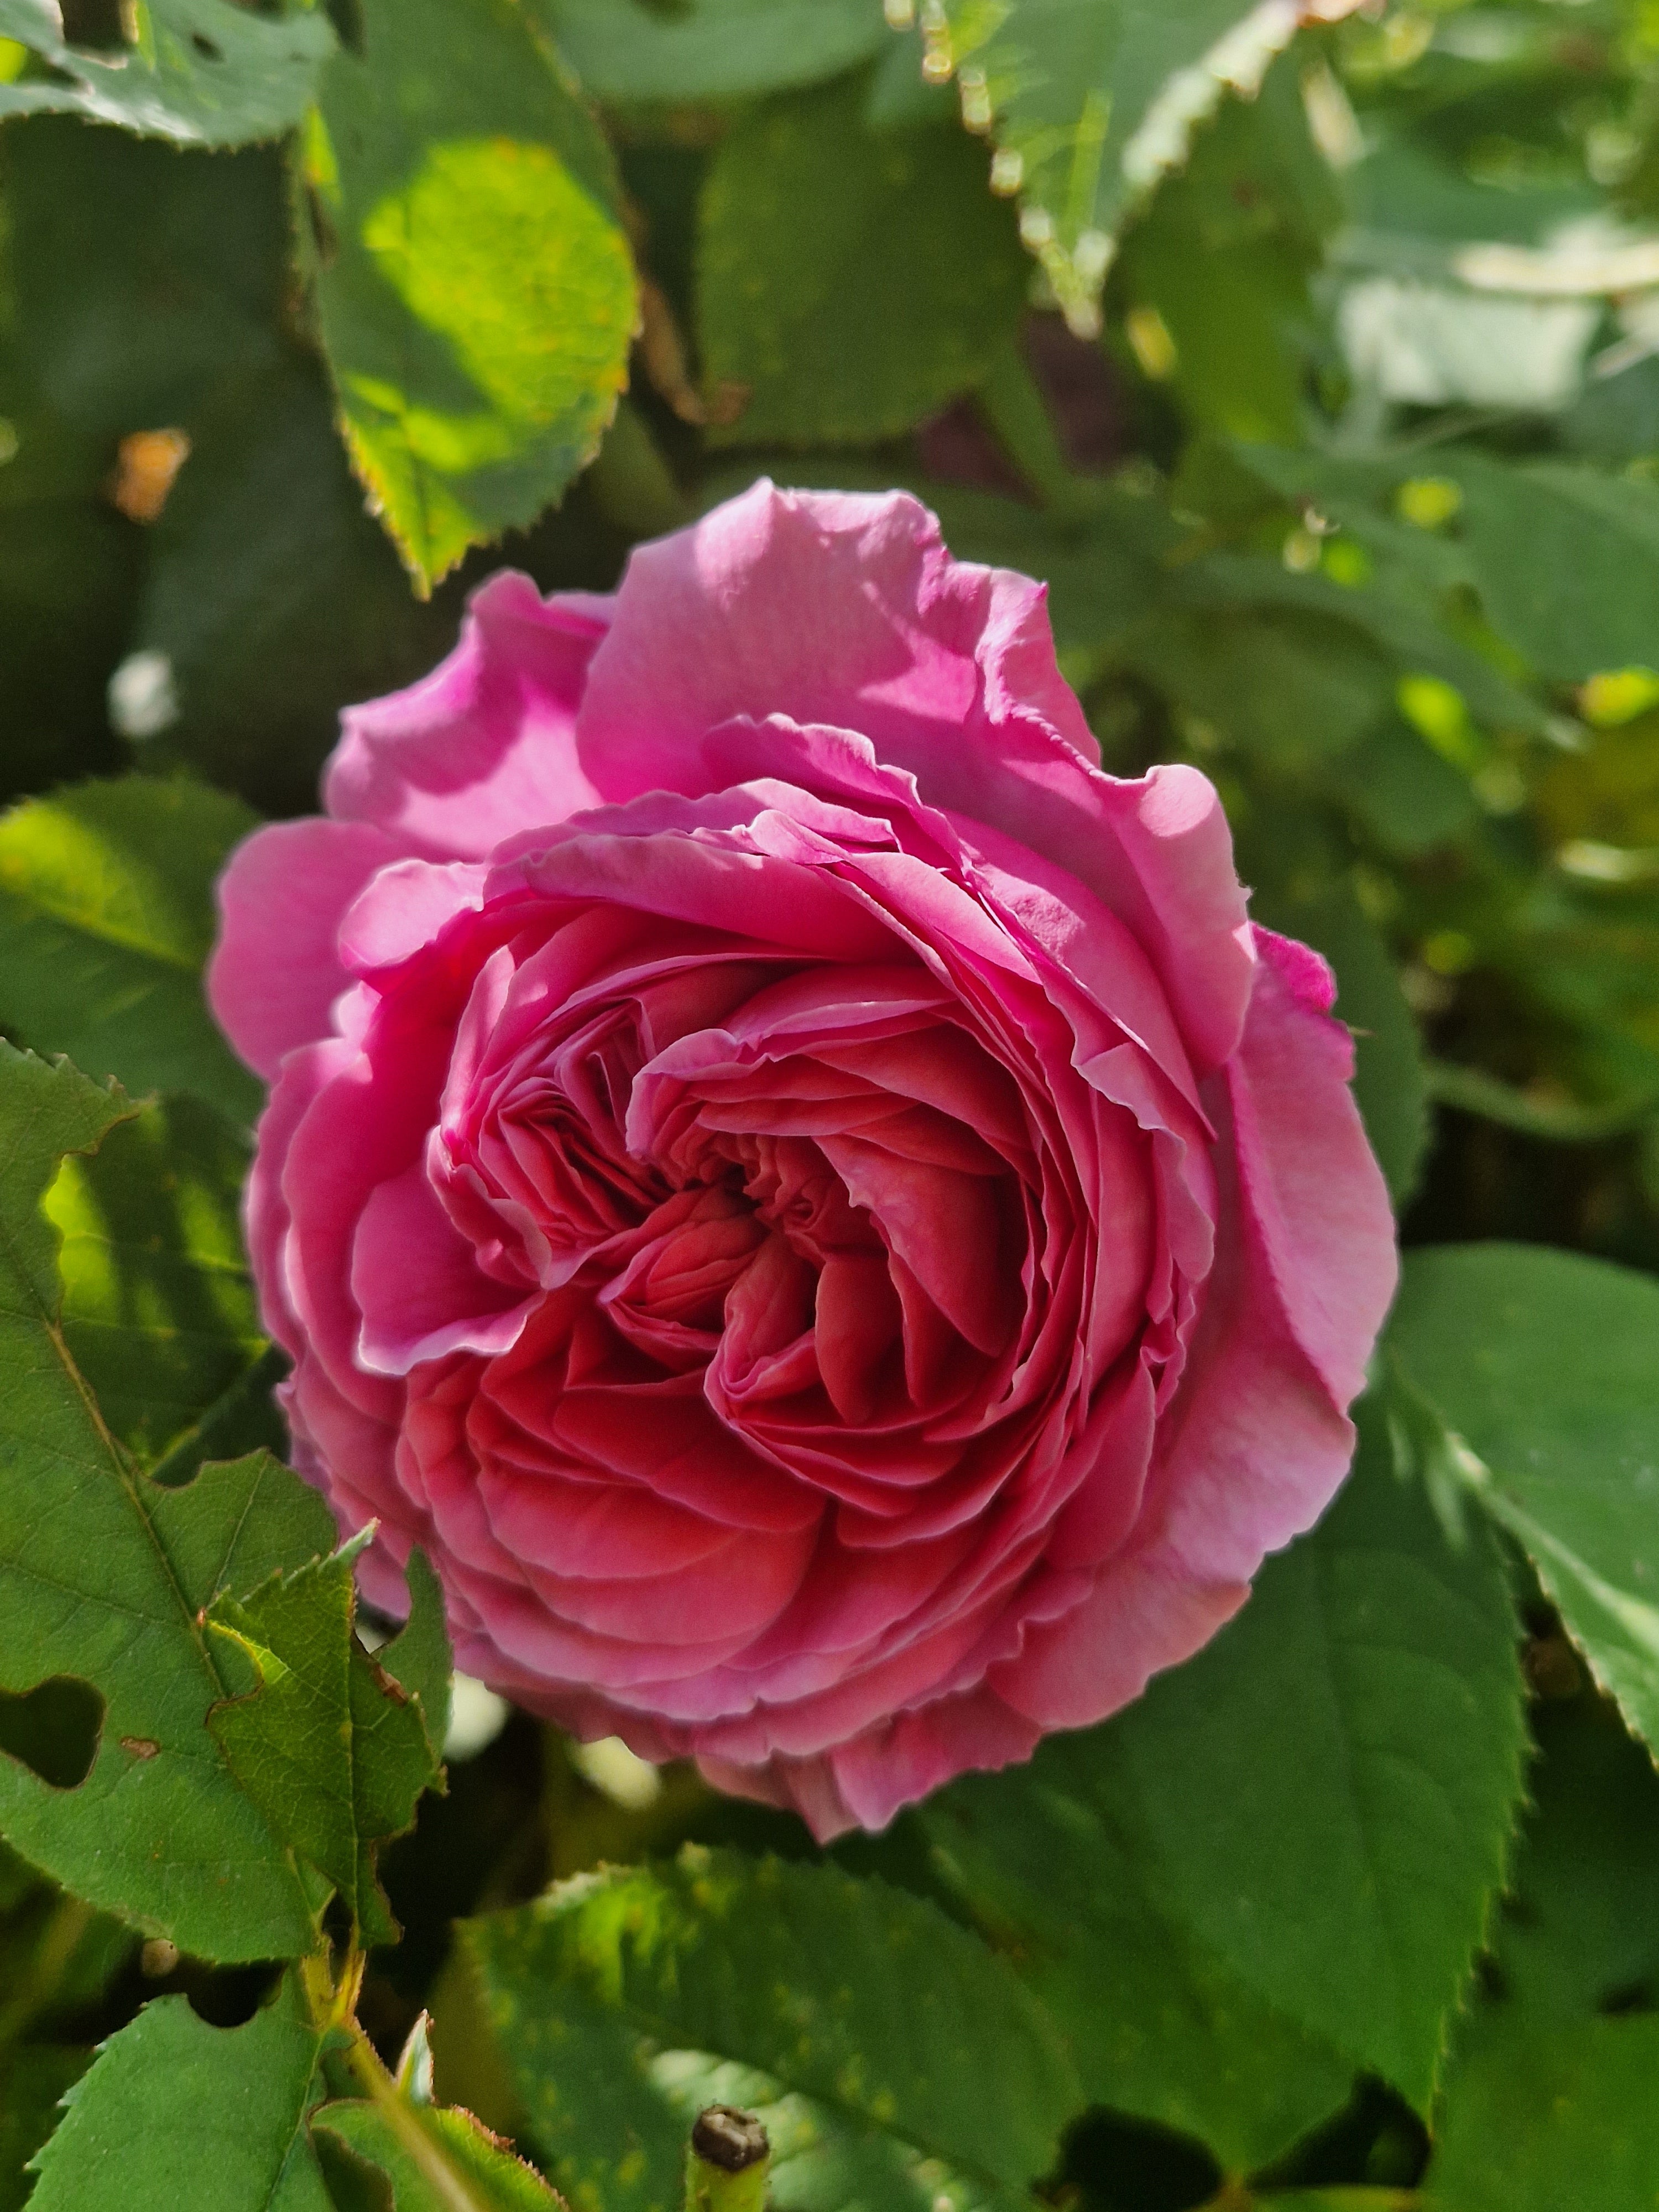 Le parfum de rose en aromathérapie : Découvrez les bienfaits thérapeutiques de l'huile essentielle de rose et son utilisation en aromathérapie pour apaiser l'esprit et le corps.